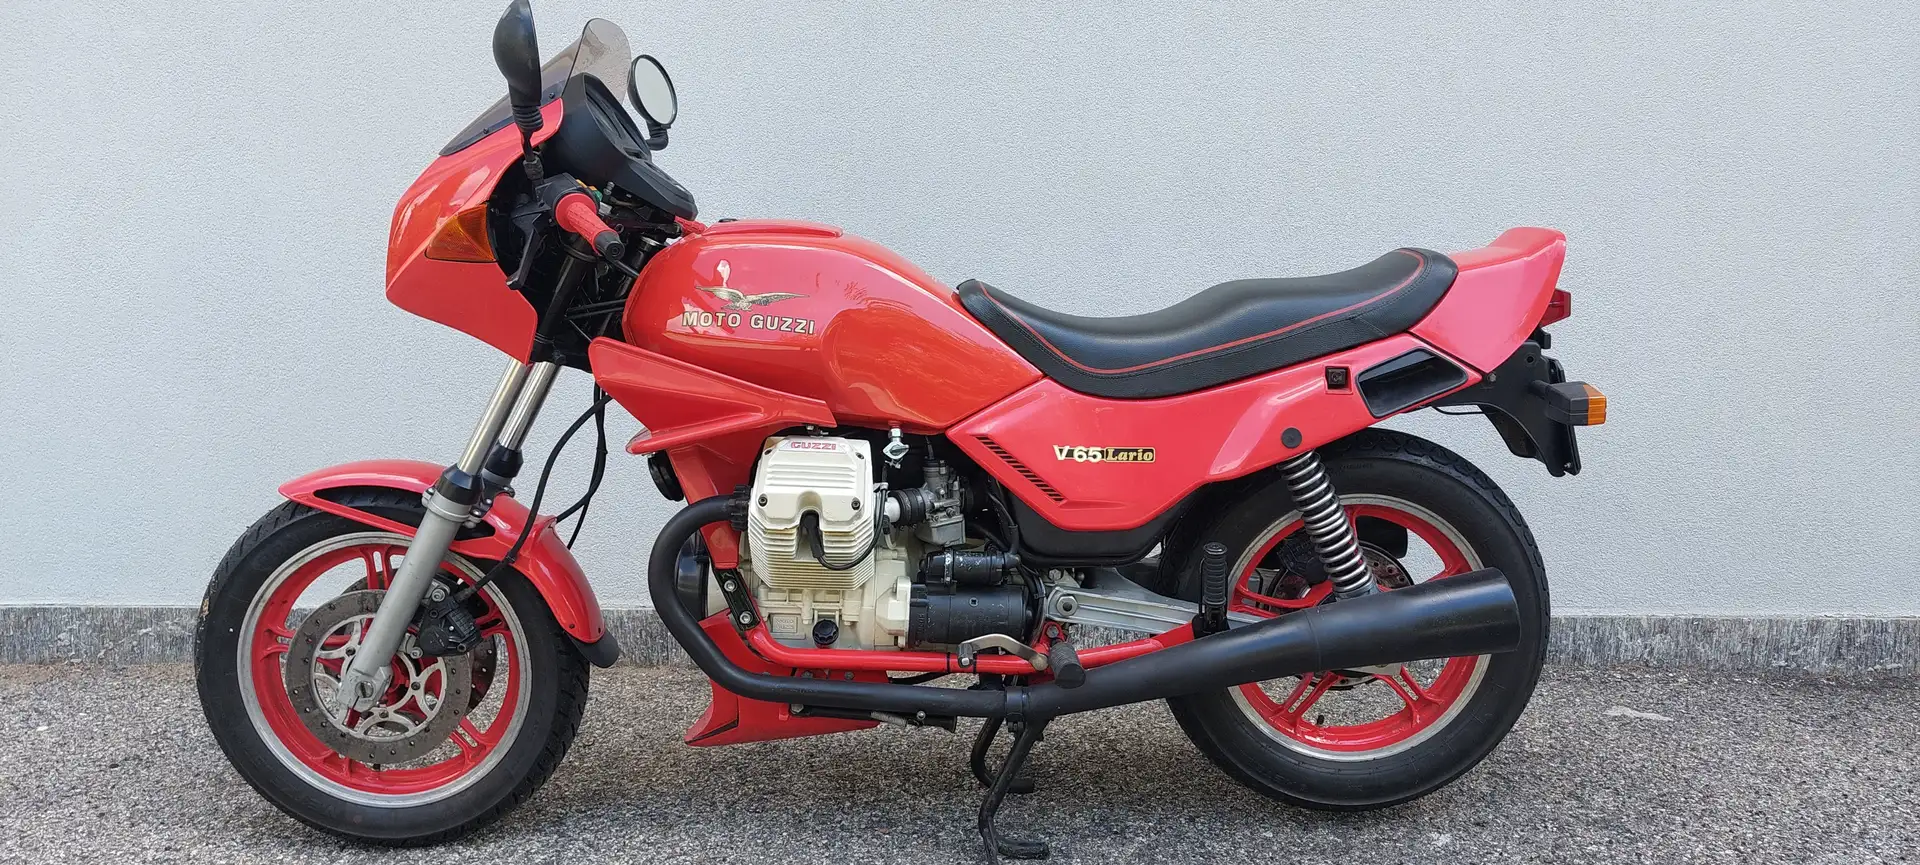 Moto Guzzi V 65 Lario Piros - 2